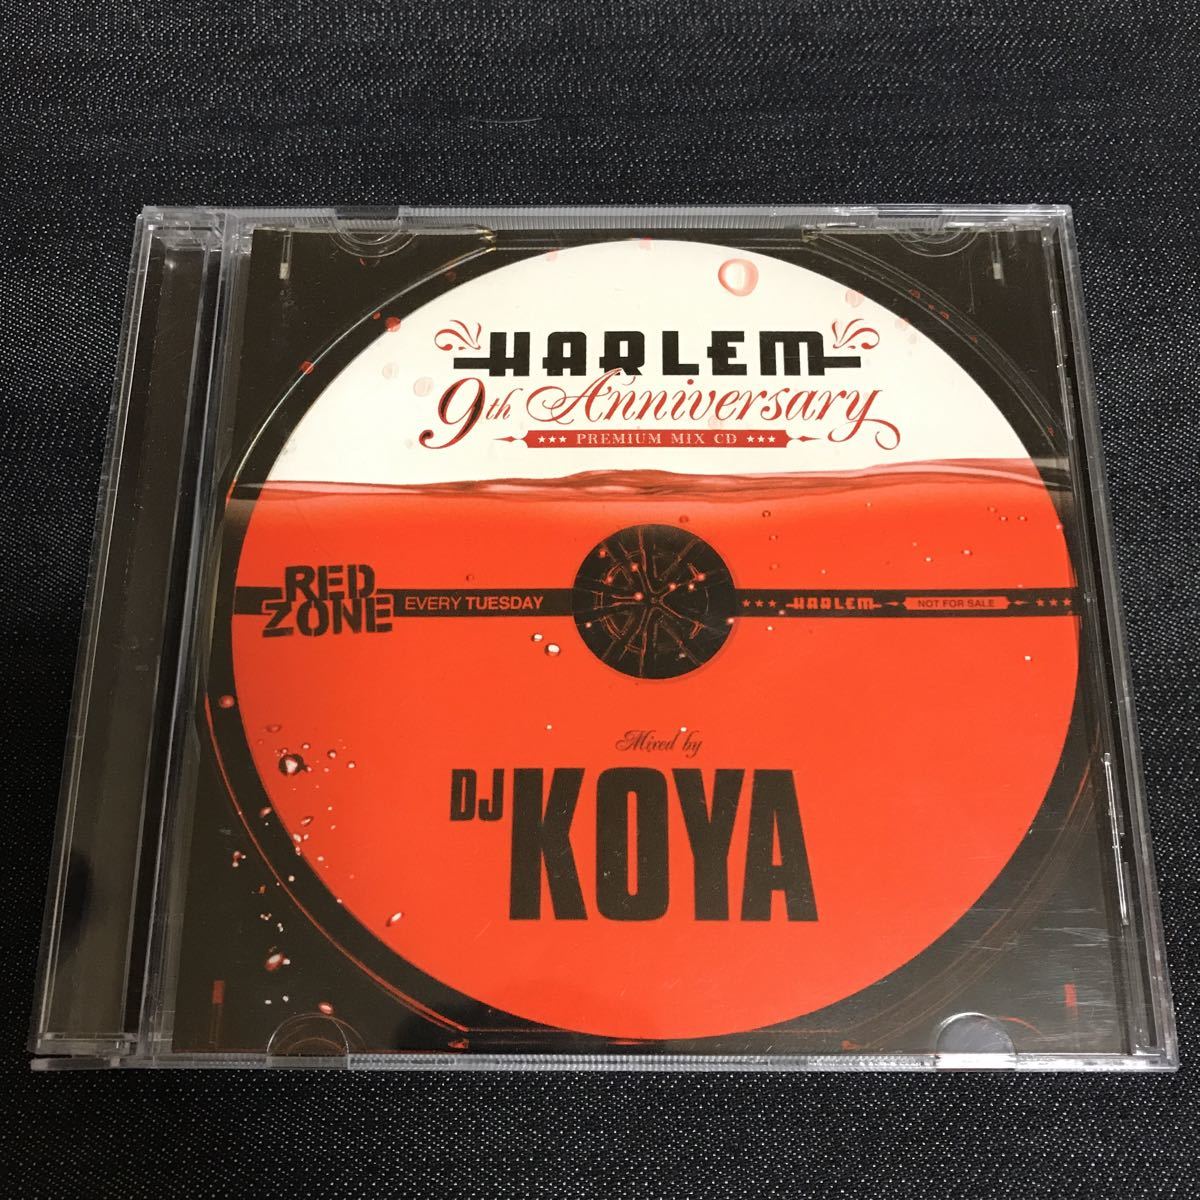 【非売品】HARLEM 9th Anniversary PREMIUM MIX CD / DJ KOYA/ Every Tuesday RED ZONE_画像1